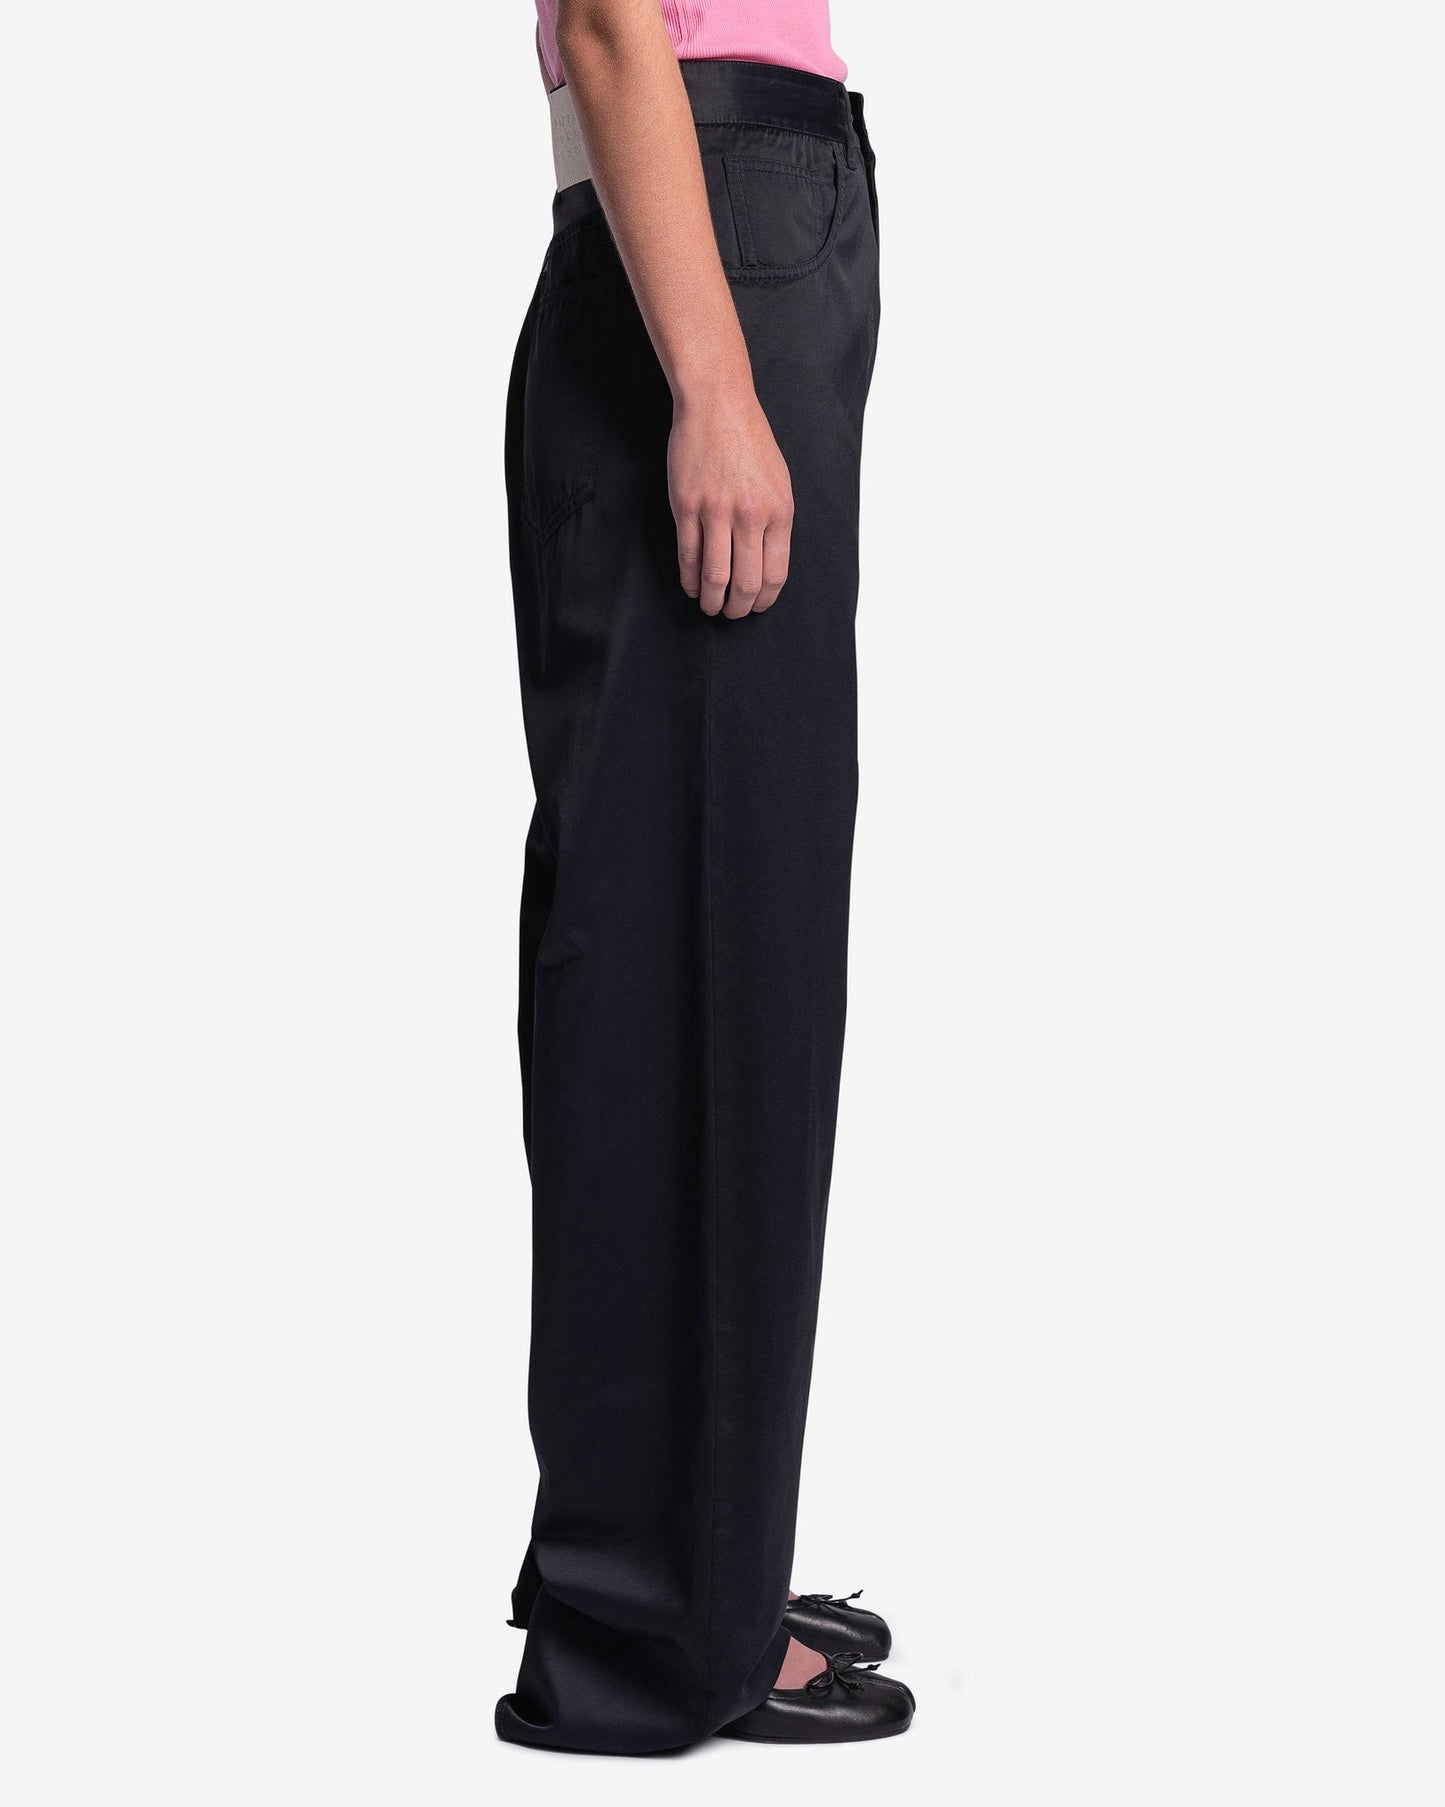 MM6 Maison Margiela Women Pants Women's Oversized 5-Pockets Pants in Black